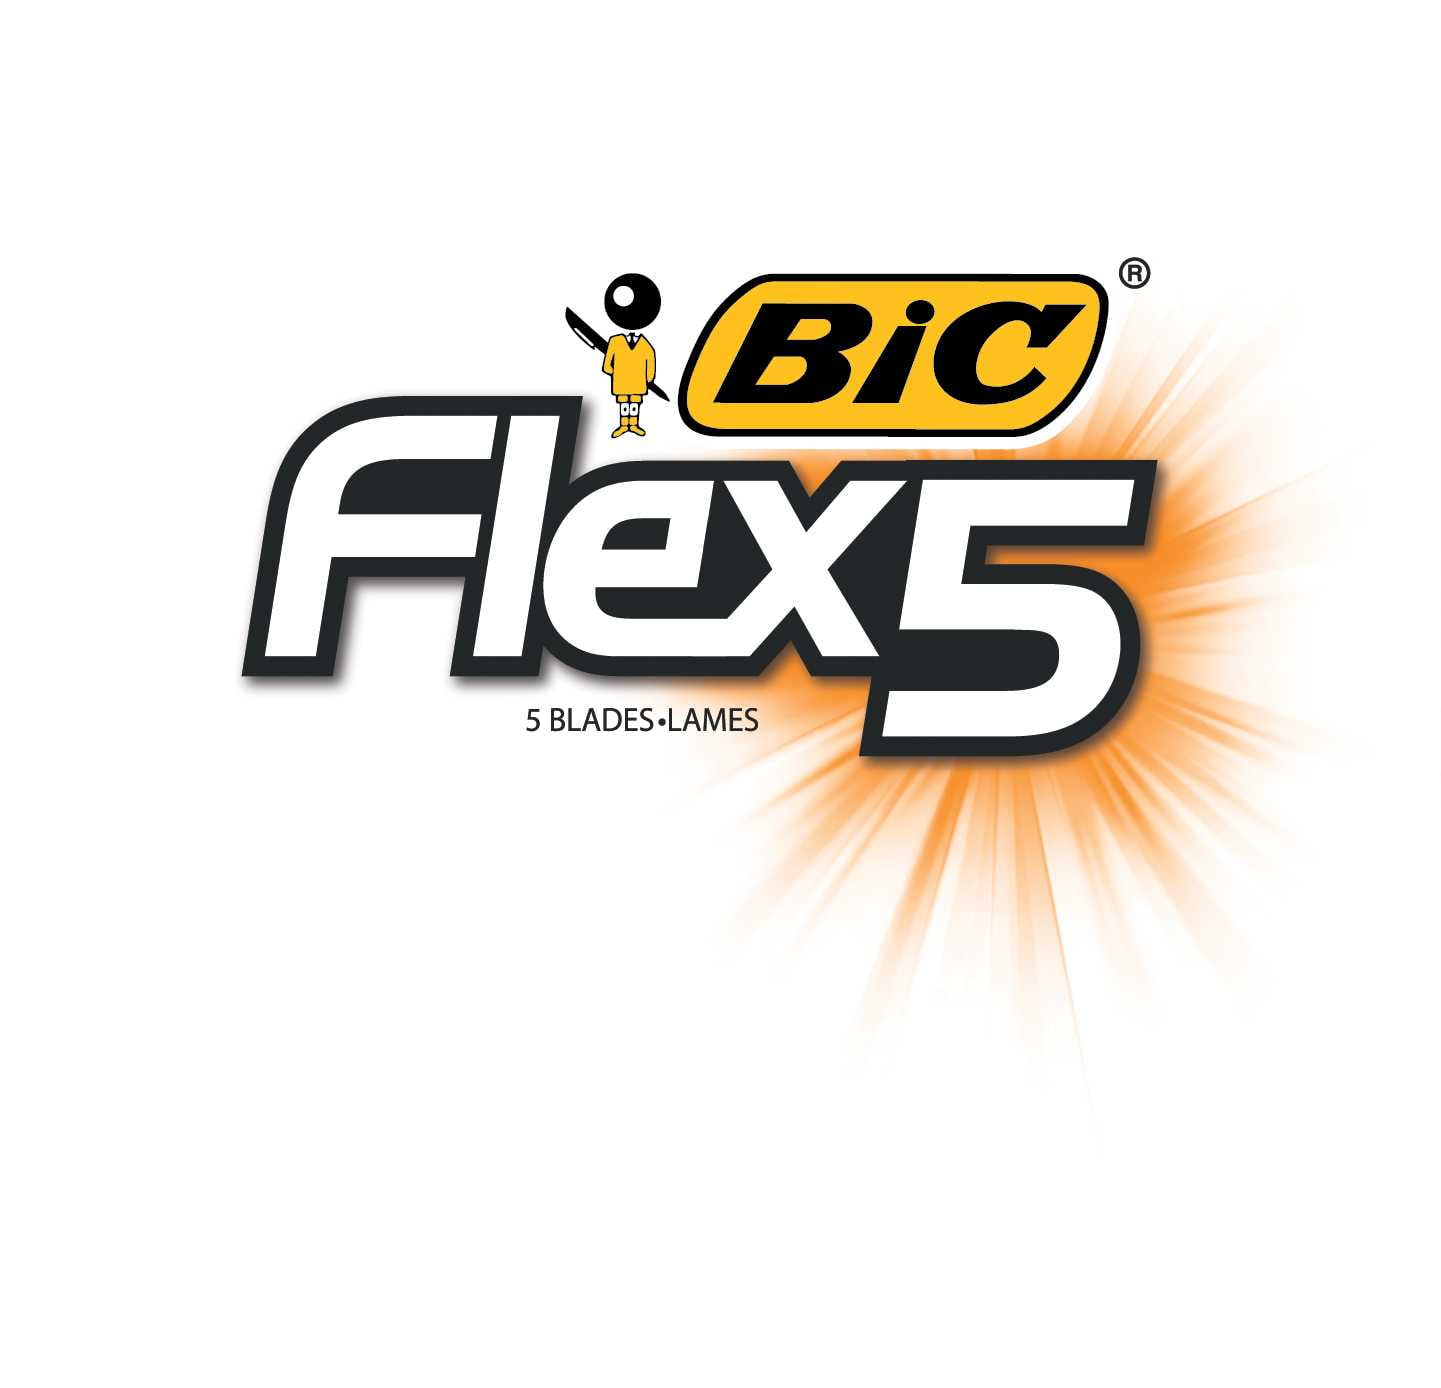 Биг гибрид. BIC Flex 3 Hybrid лого. Flex логотип. Эко Флекс лого мотор. Flax logo.